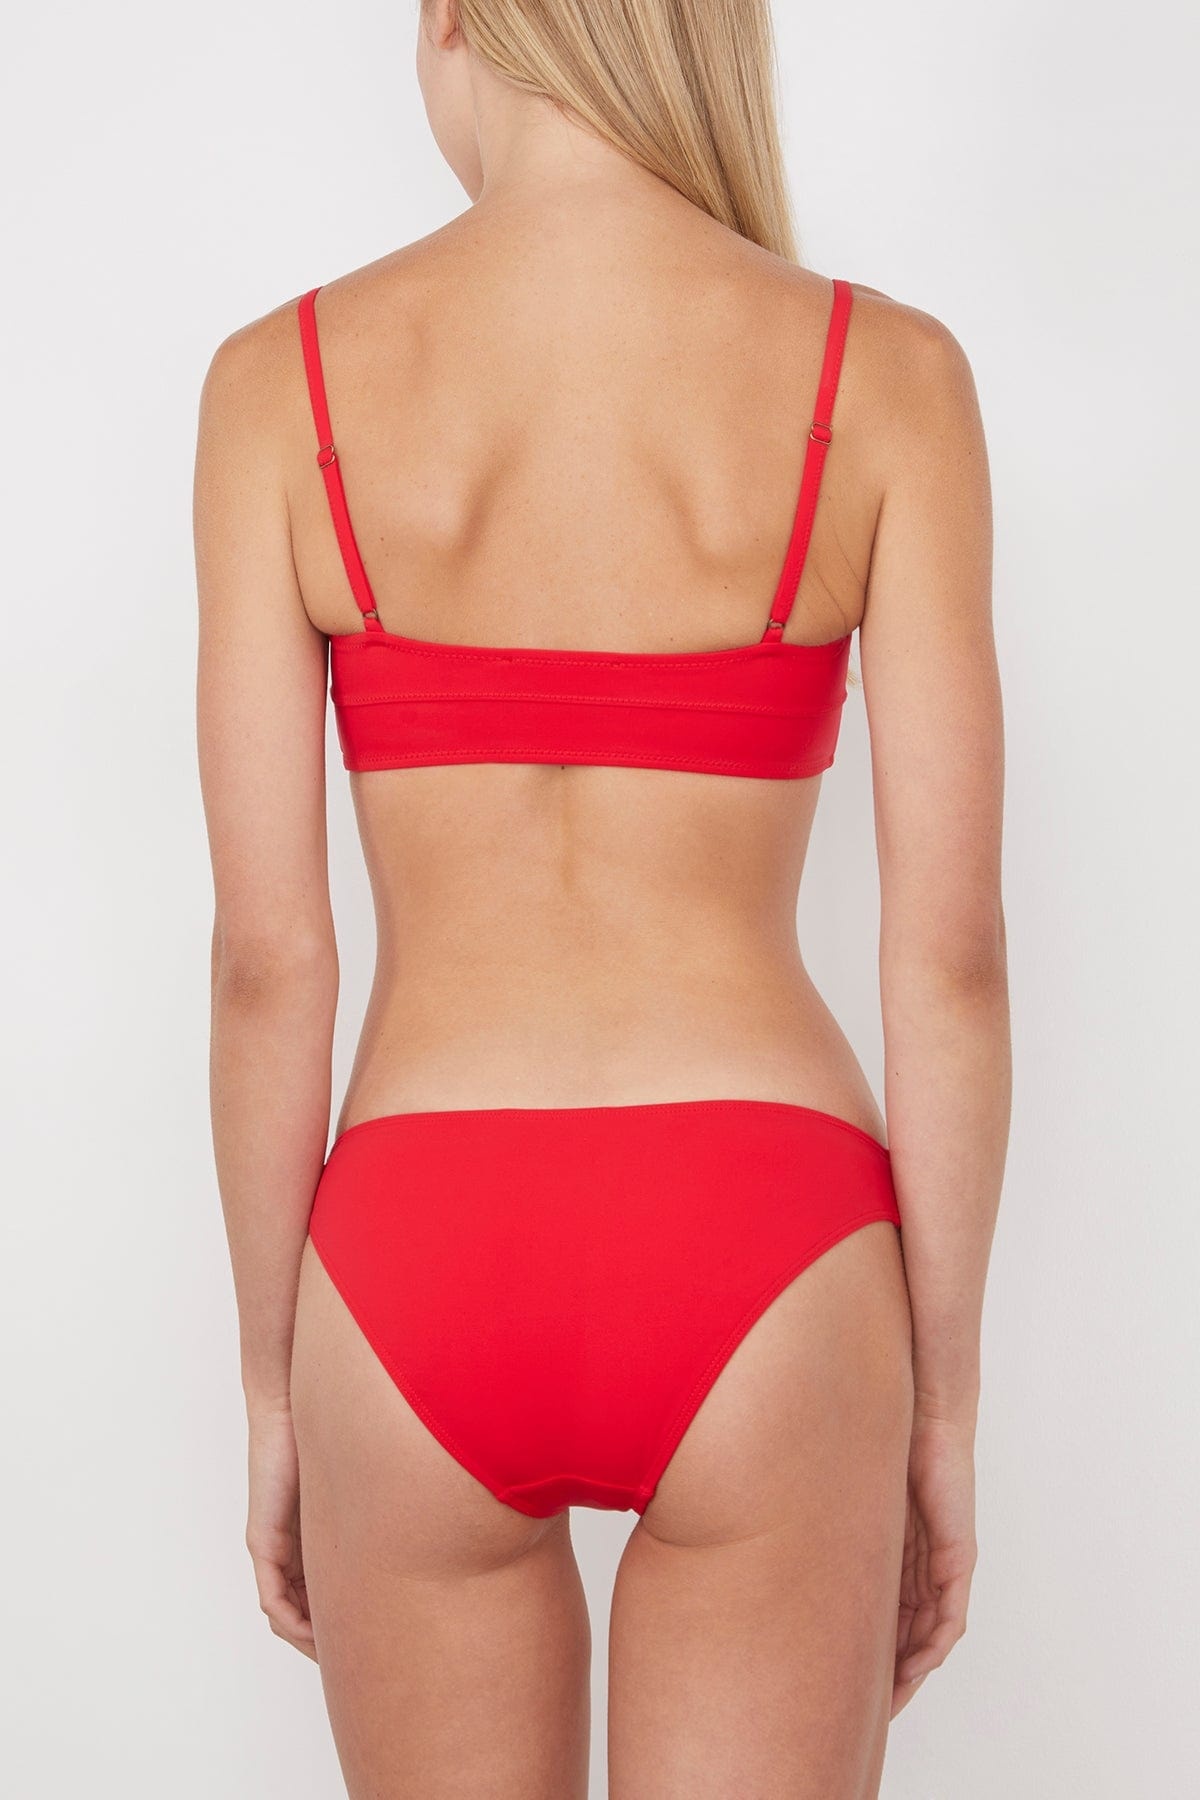 Zahara Bikini Top in Scarlet - 4